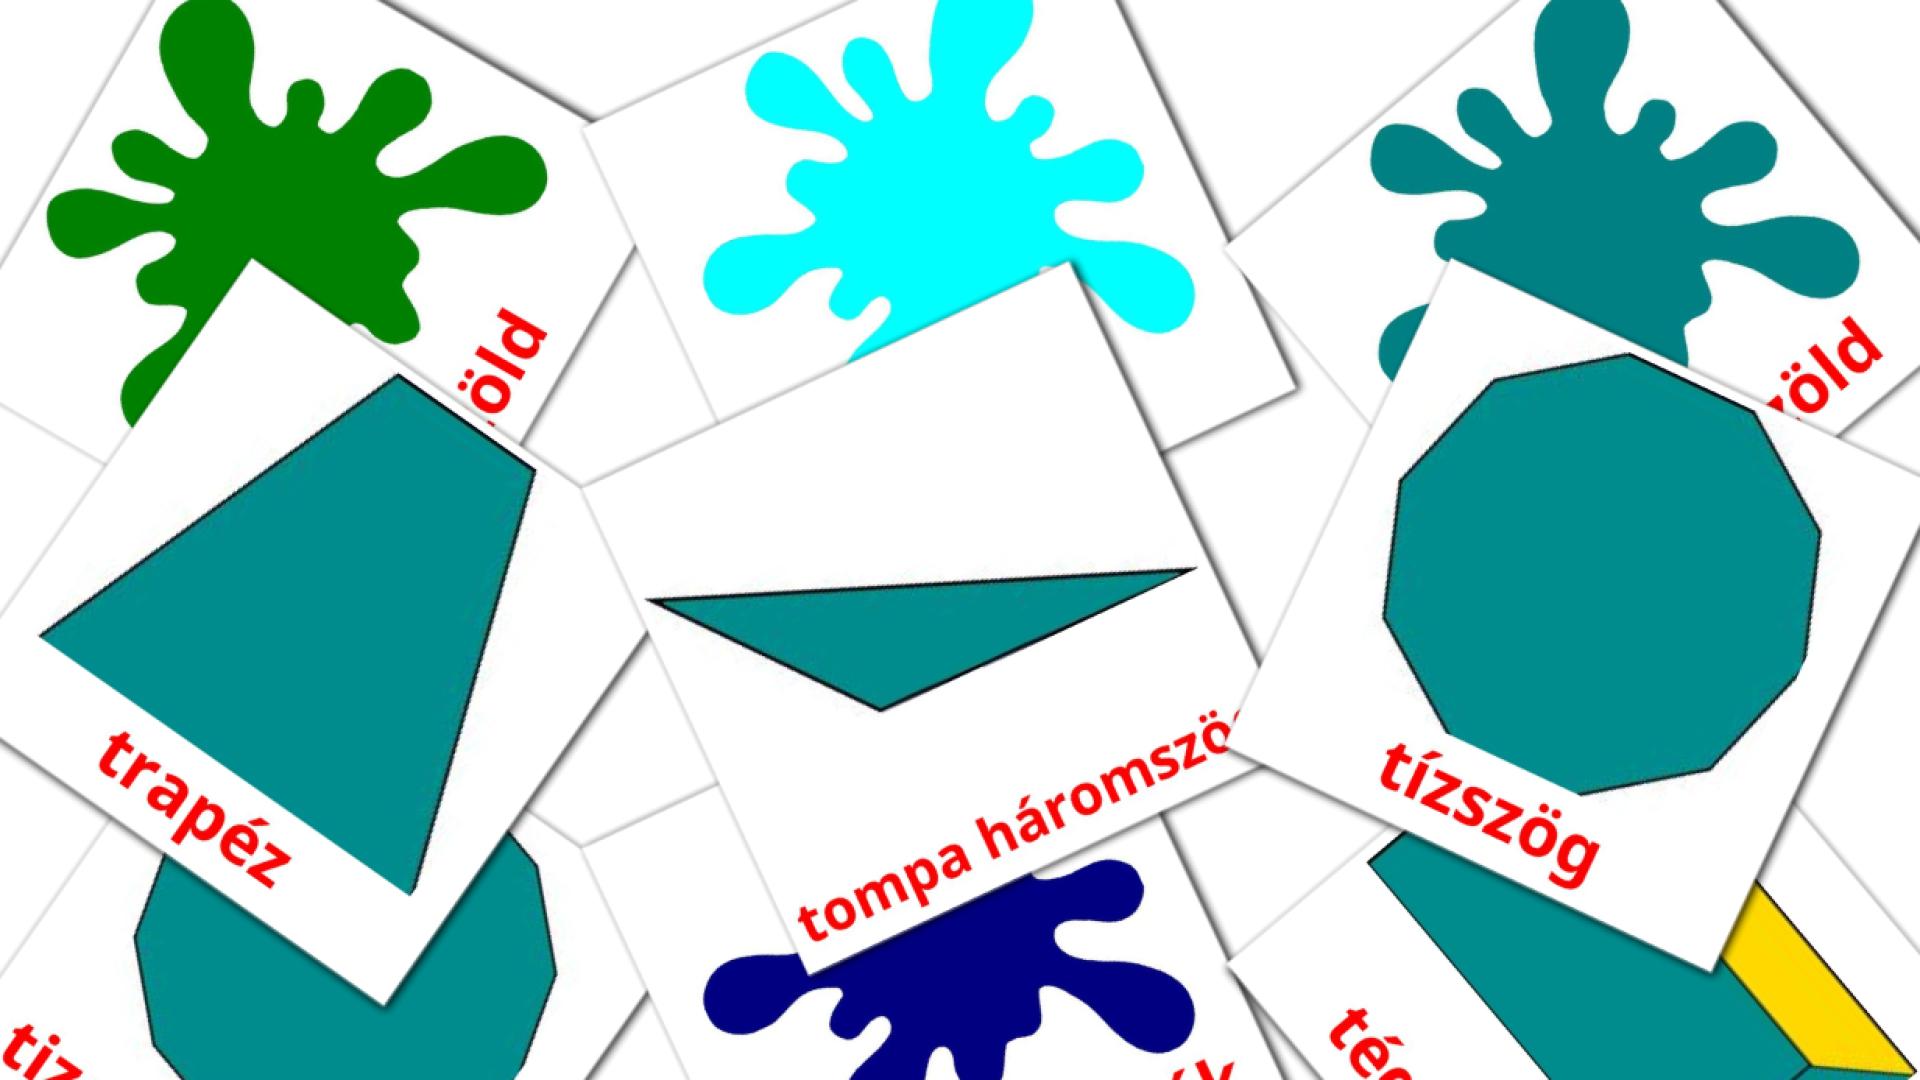 húngaro tarjetas de vocabulario en formák